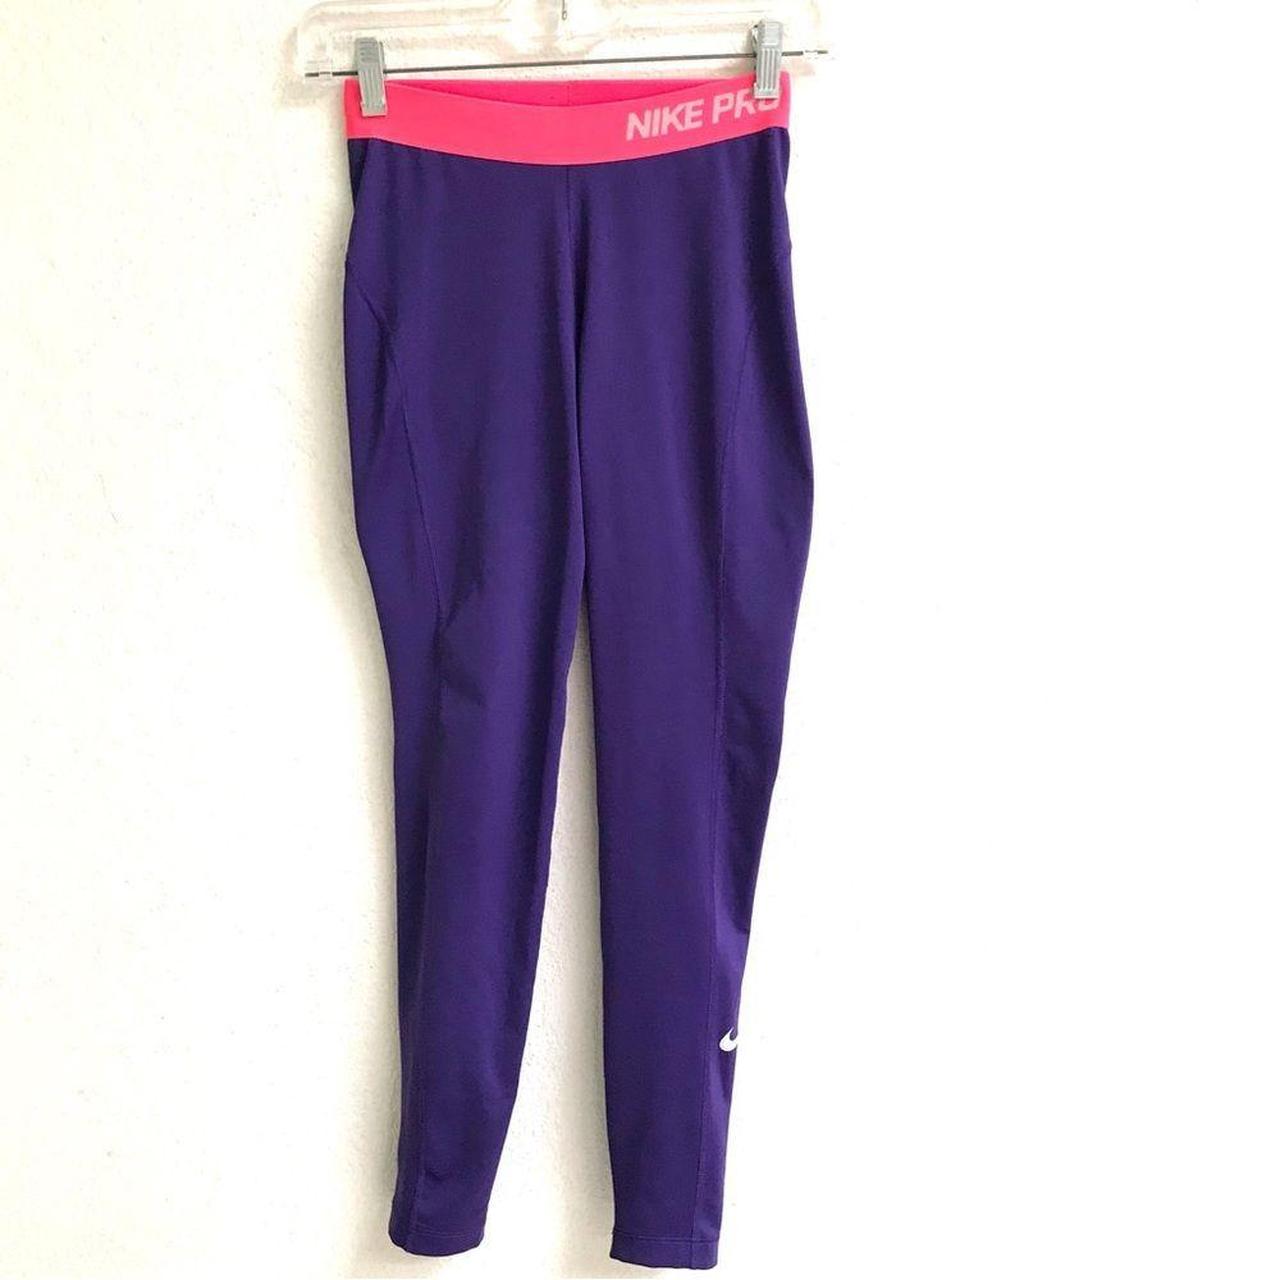 Nike Pro dry fit purple long leggings Size XS Great - Depop